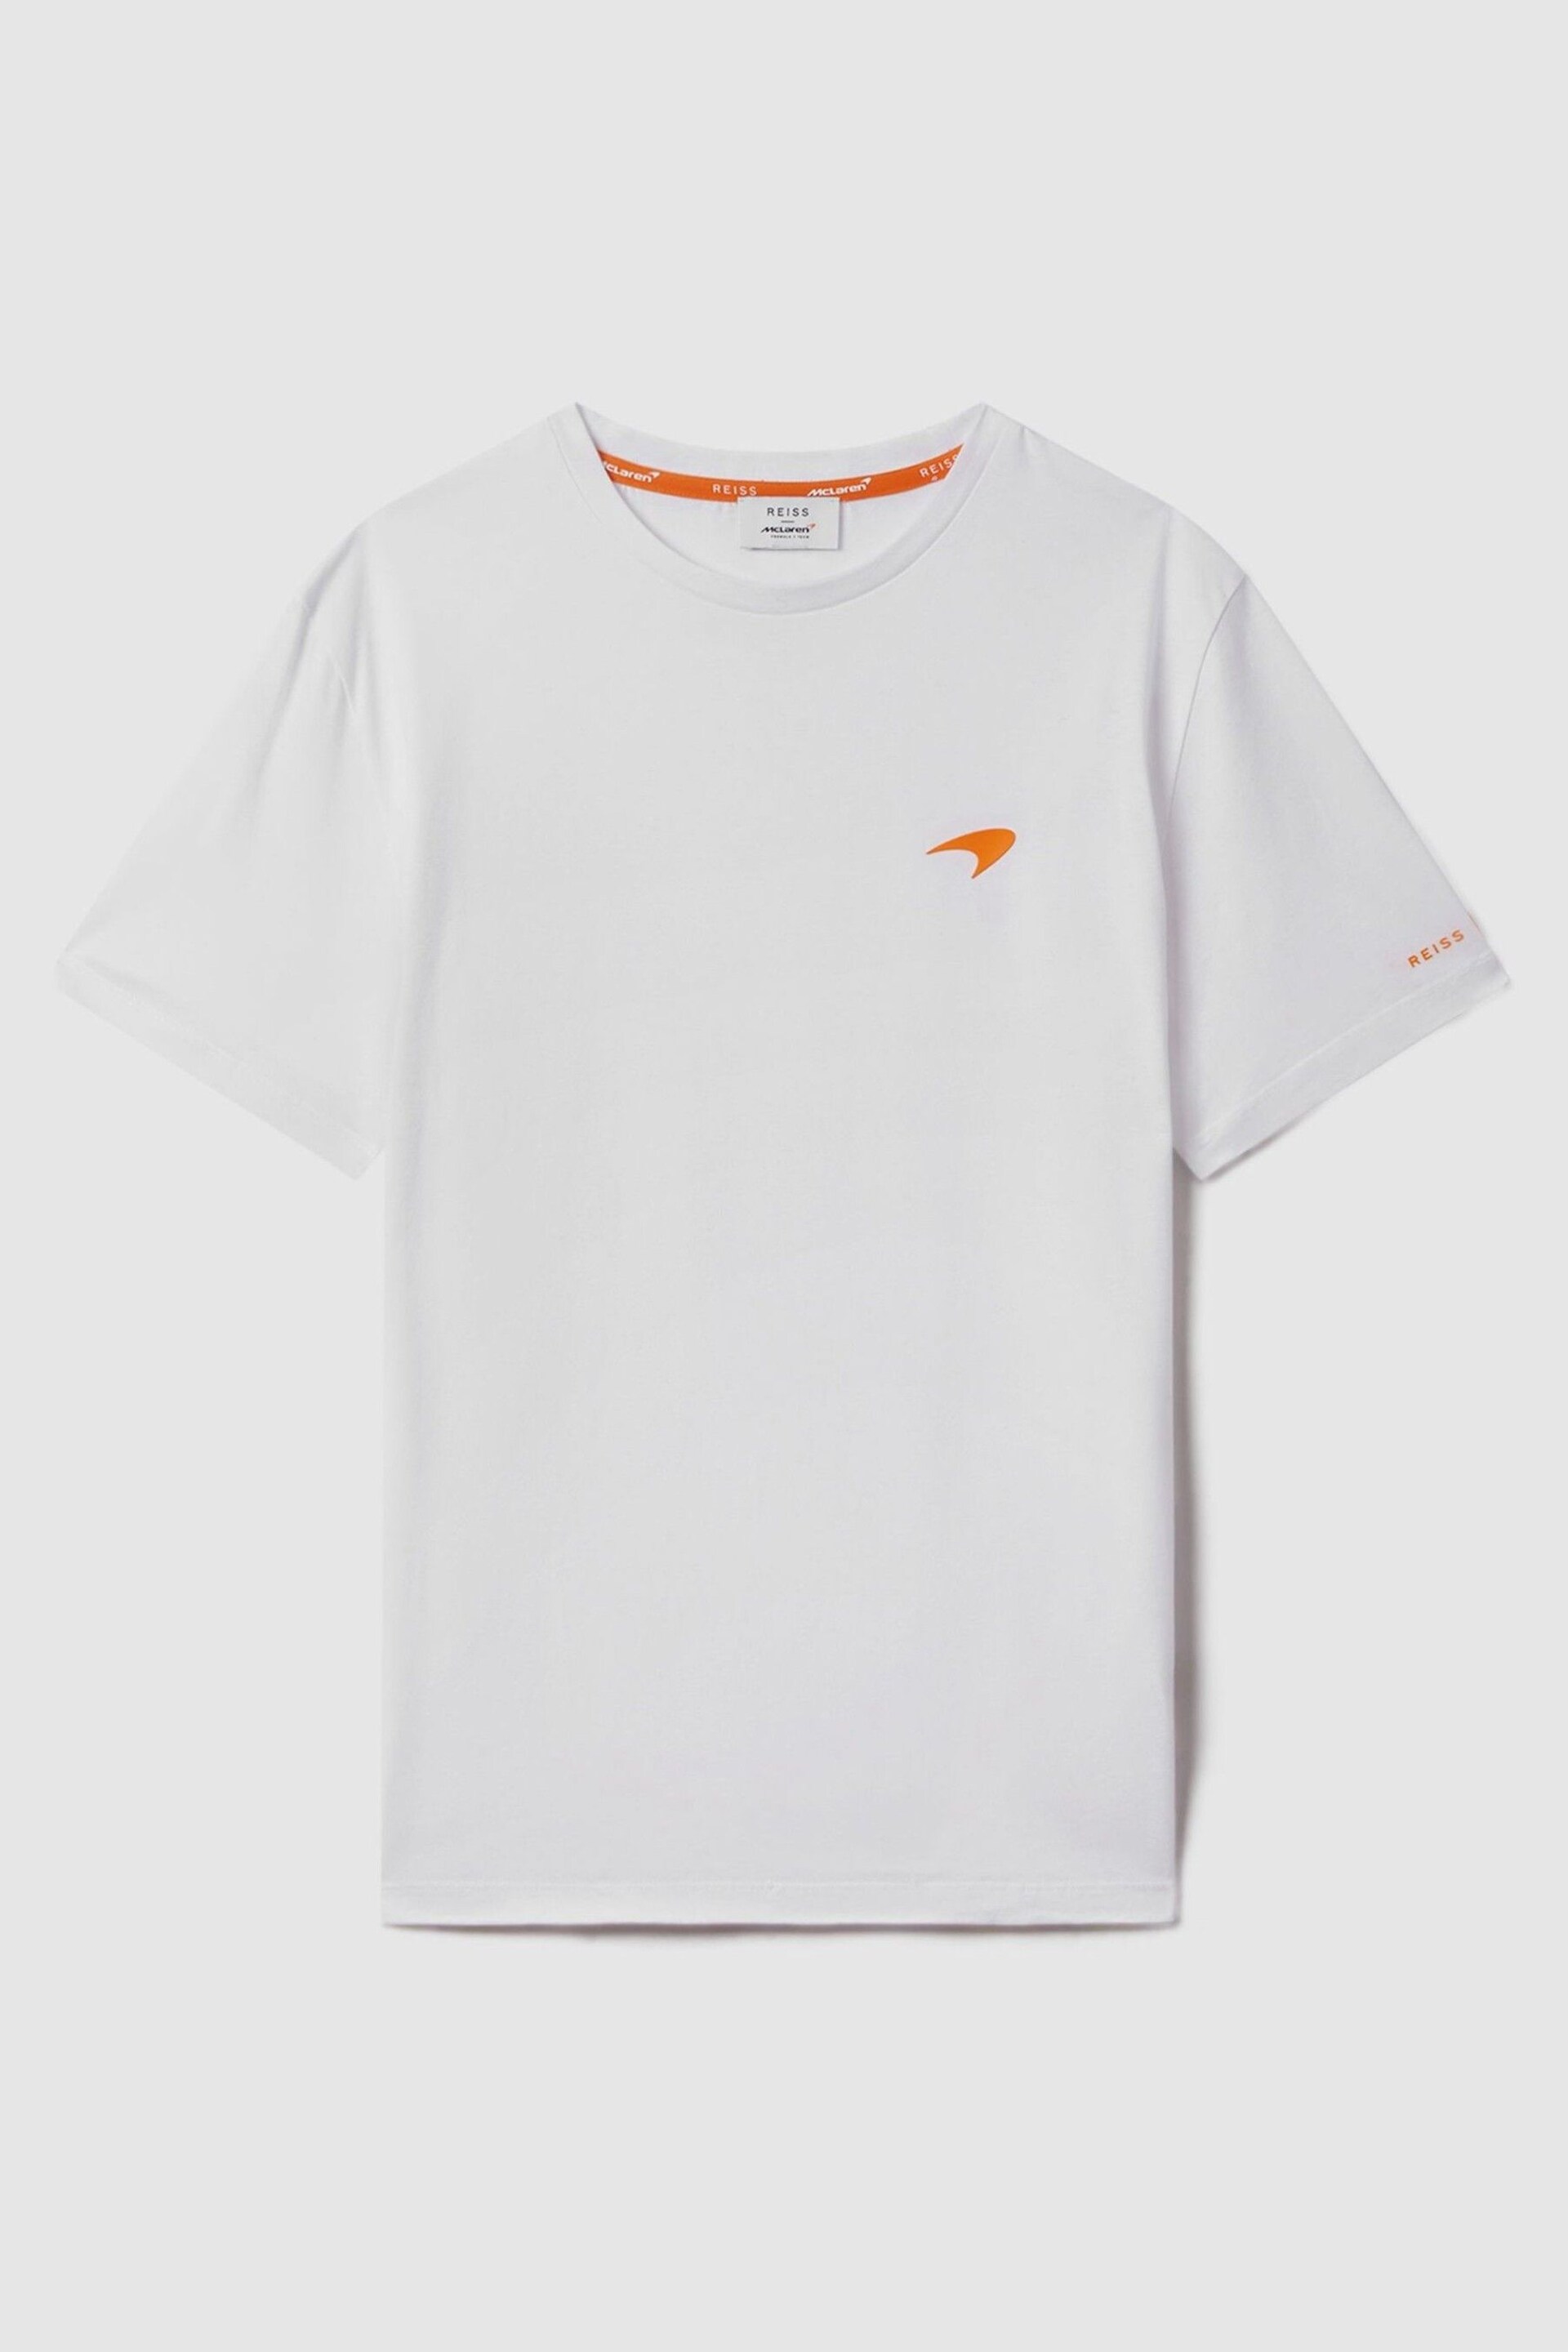 McLaren F1 Mercerised Cotton Crew Neck T-Shirt - Image 2 of 7